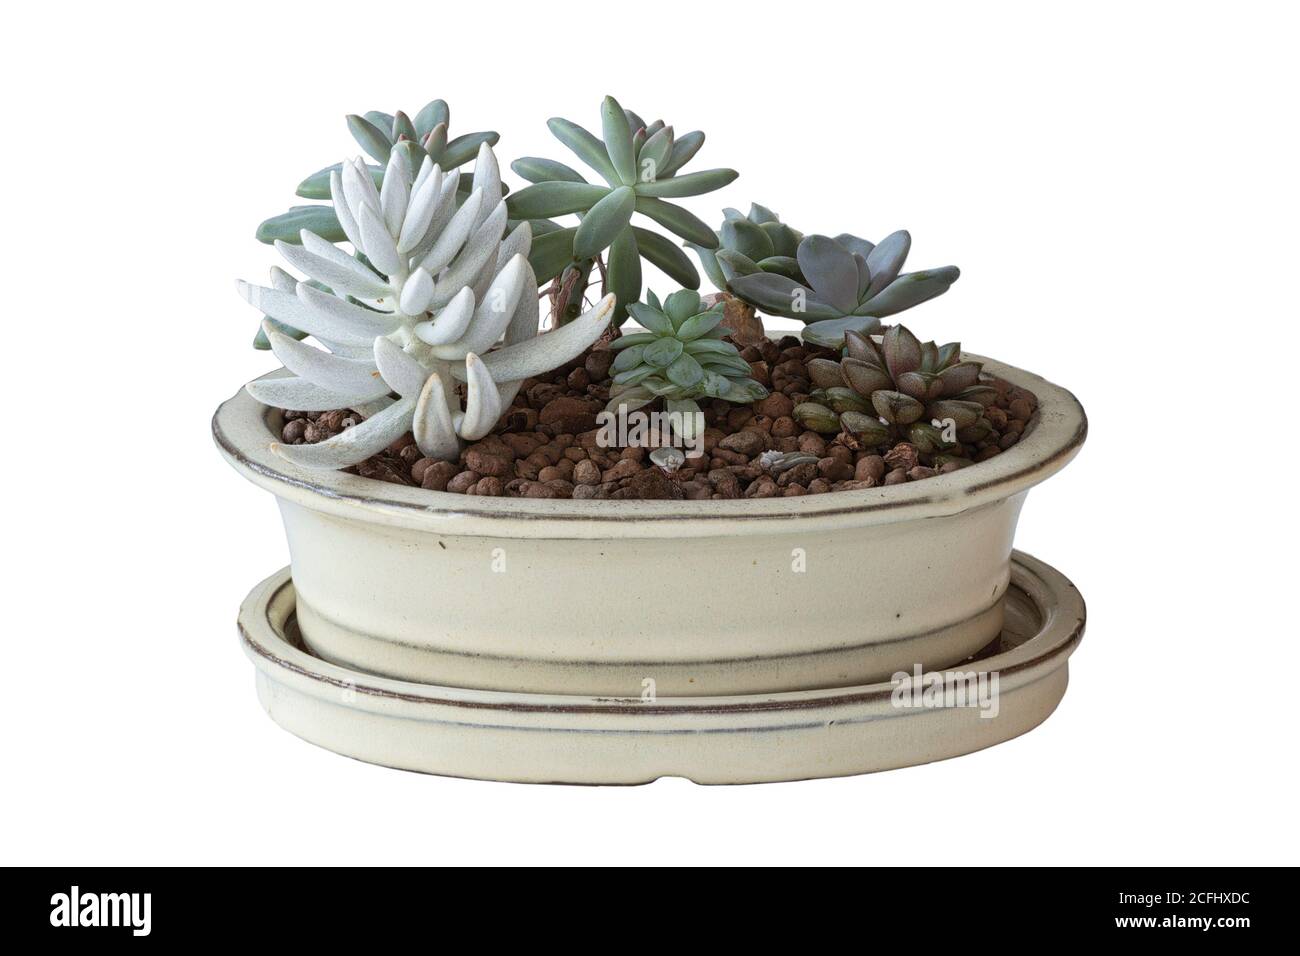 ciotola bianca con disposizione dei succulenti isolata su sfondo bianco, piante interne Foto Stock